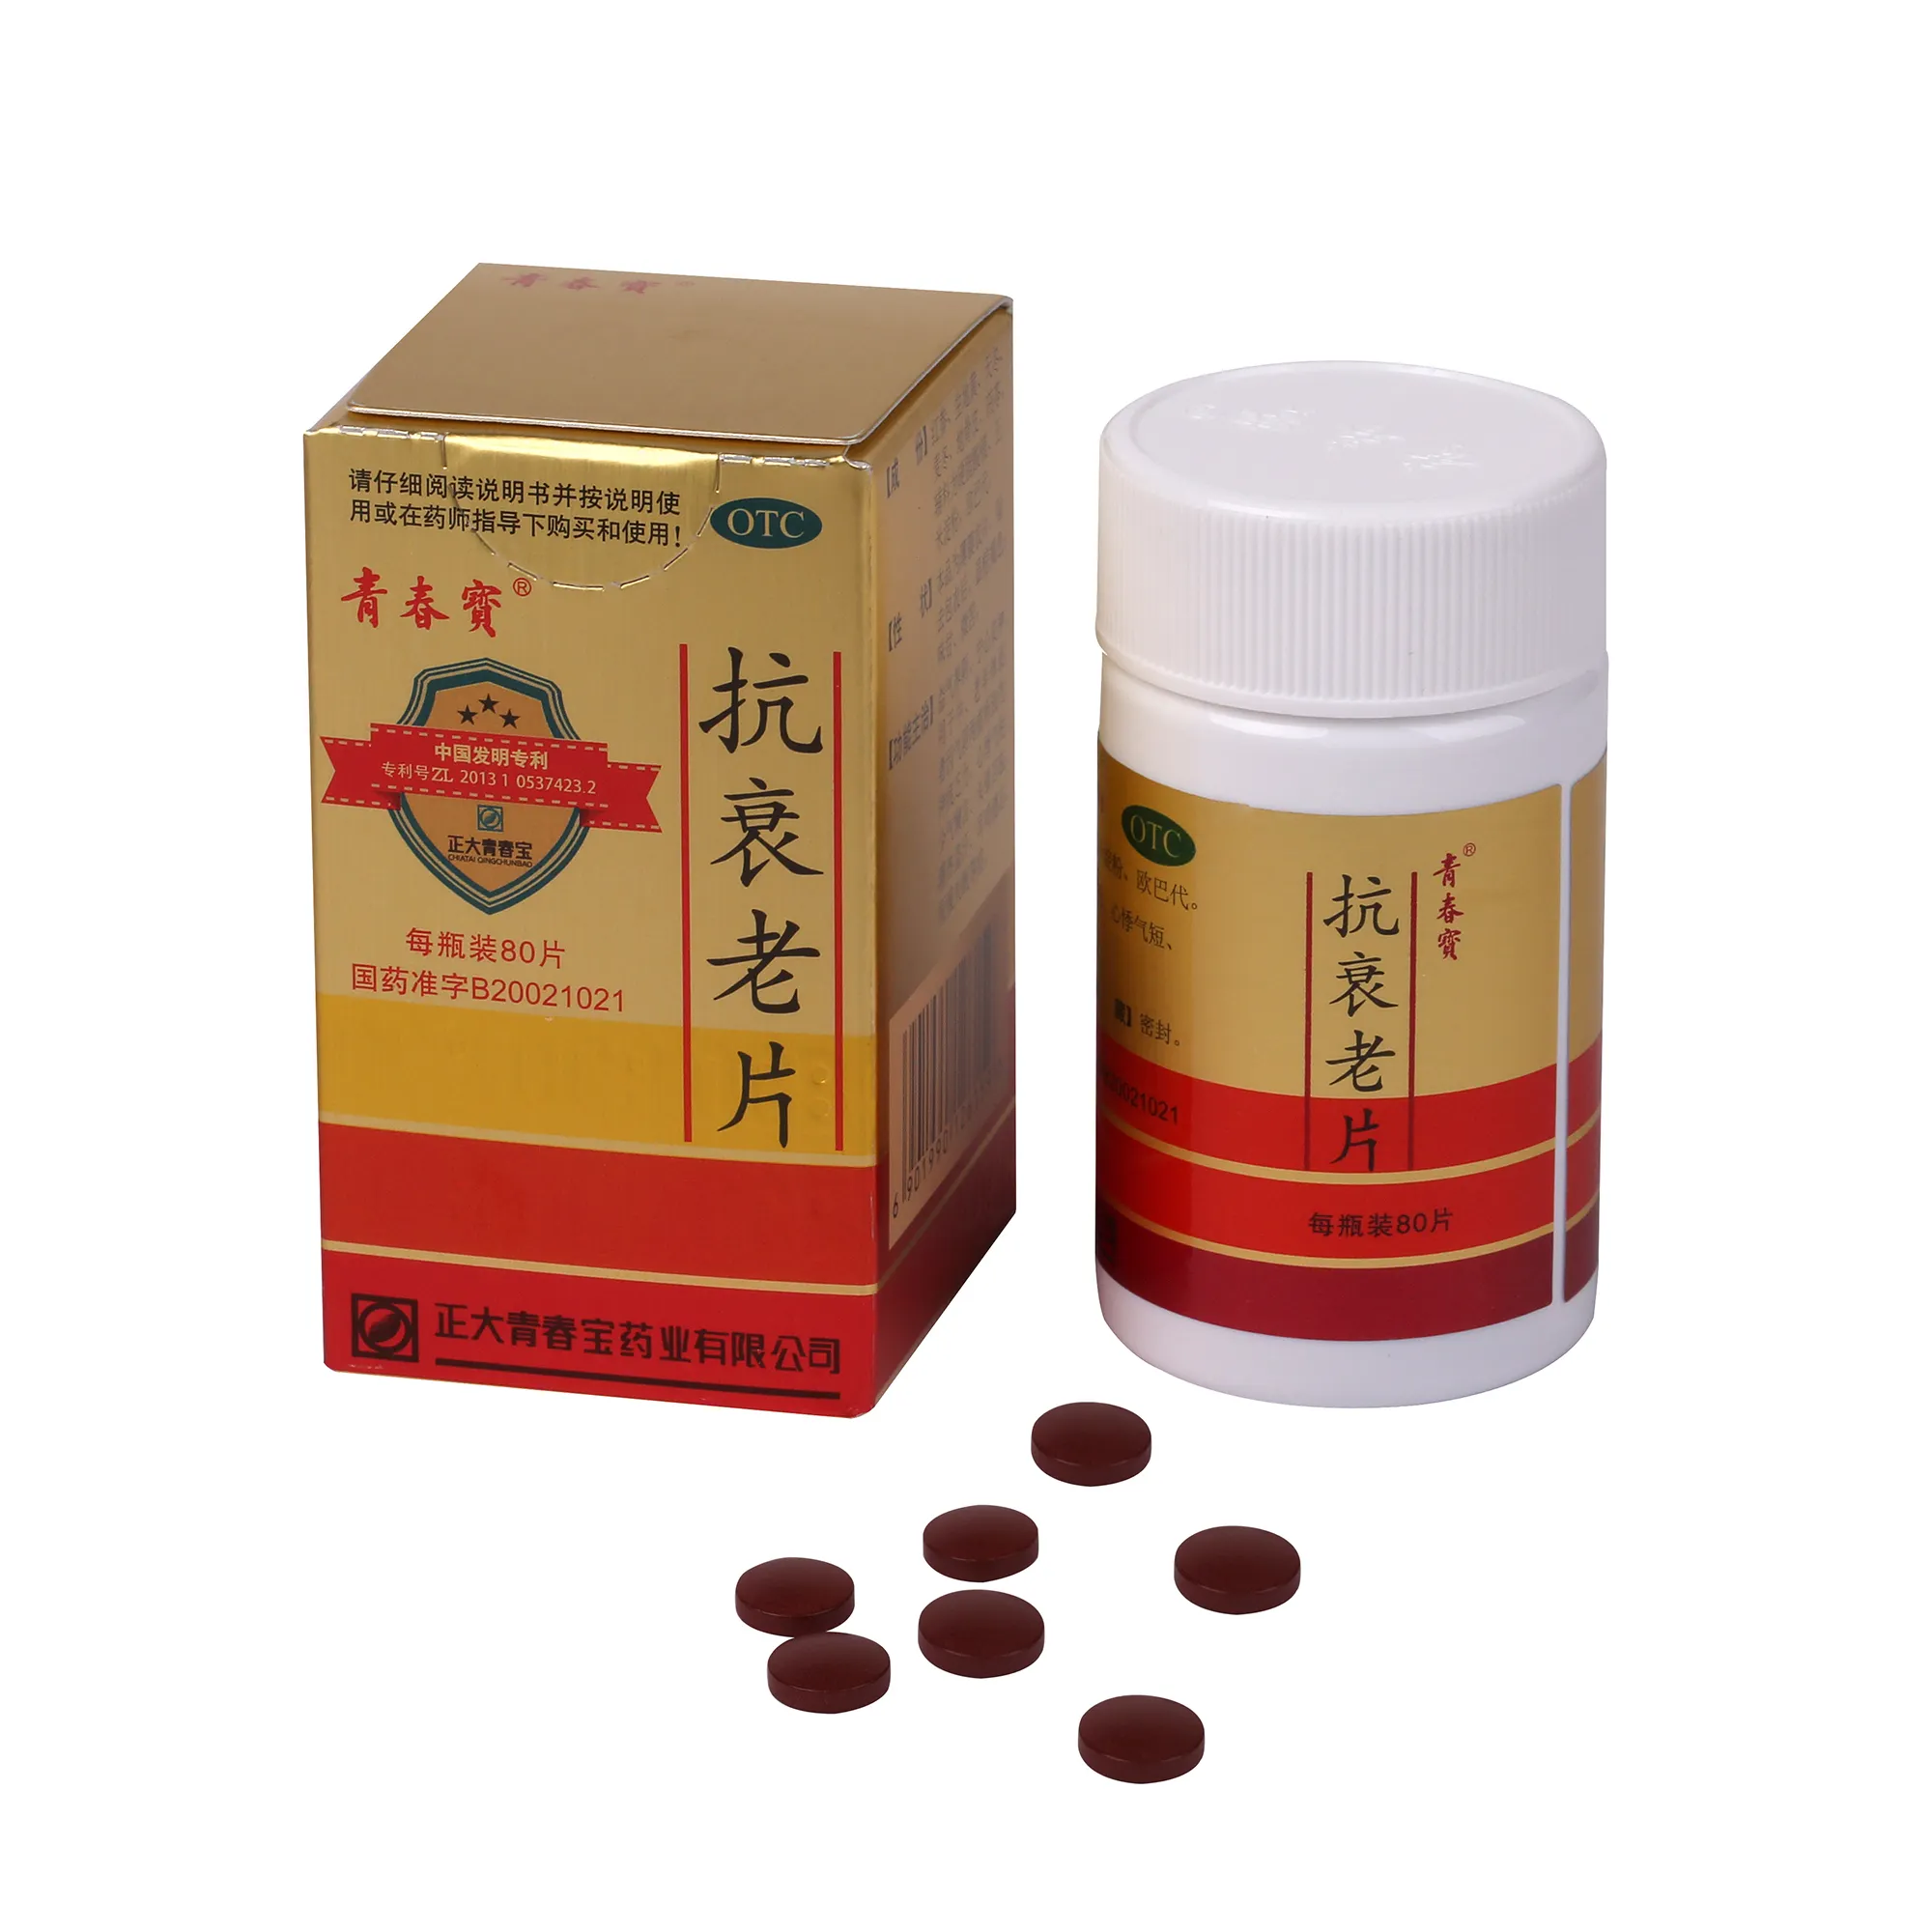 Antiaging compresse medicina tradizionale Cinese regolare lo zucchero nel sangue la fertilità a base di erbe